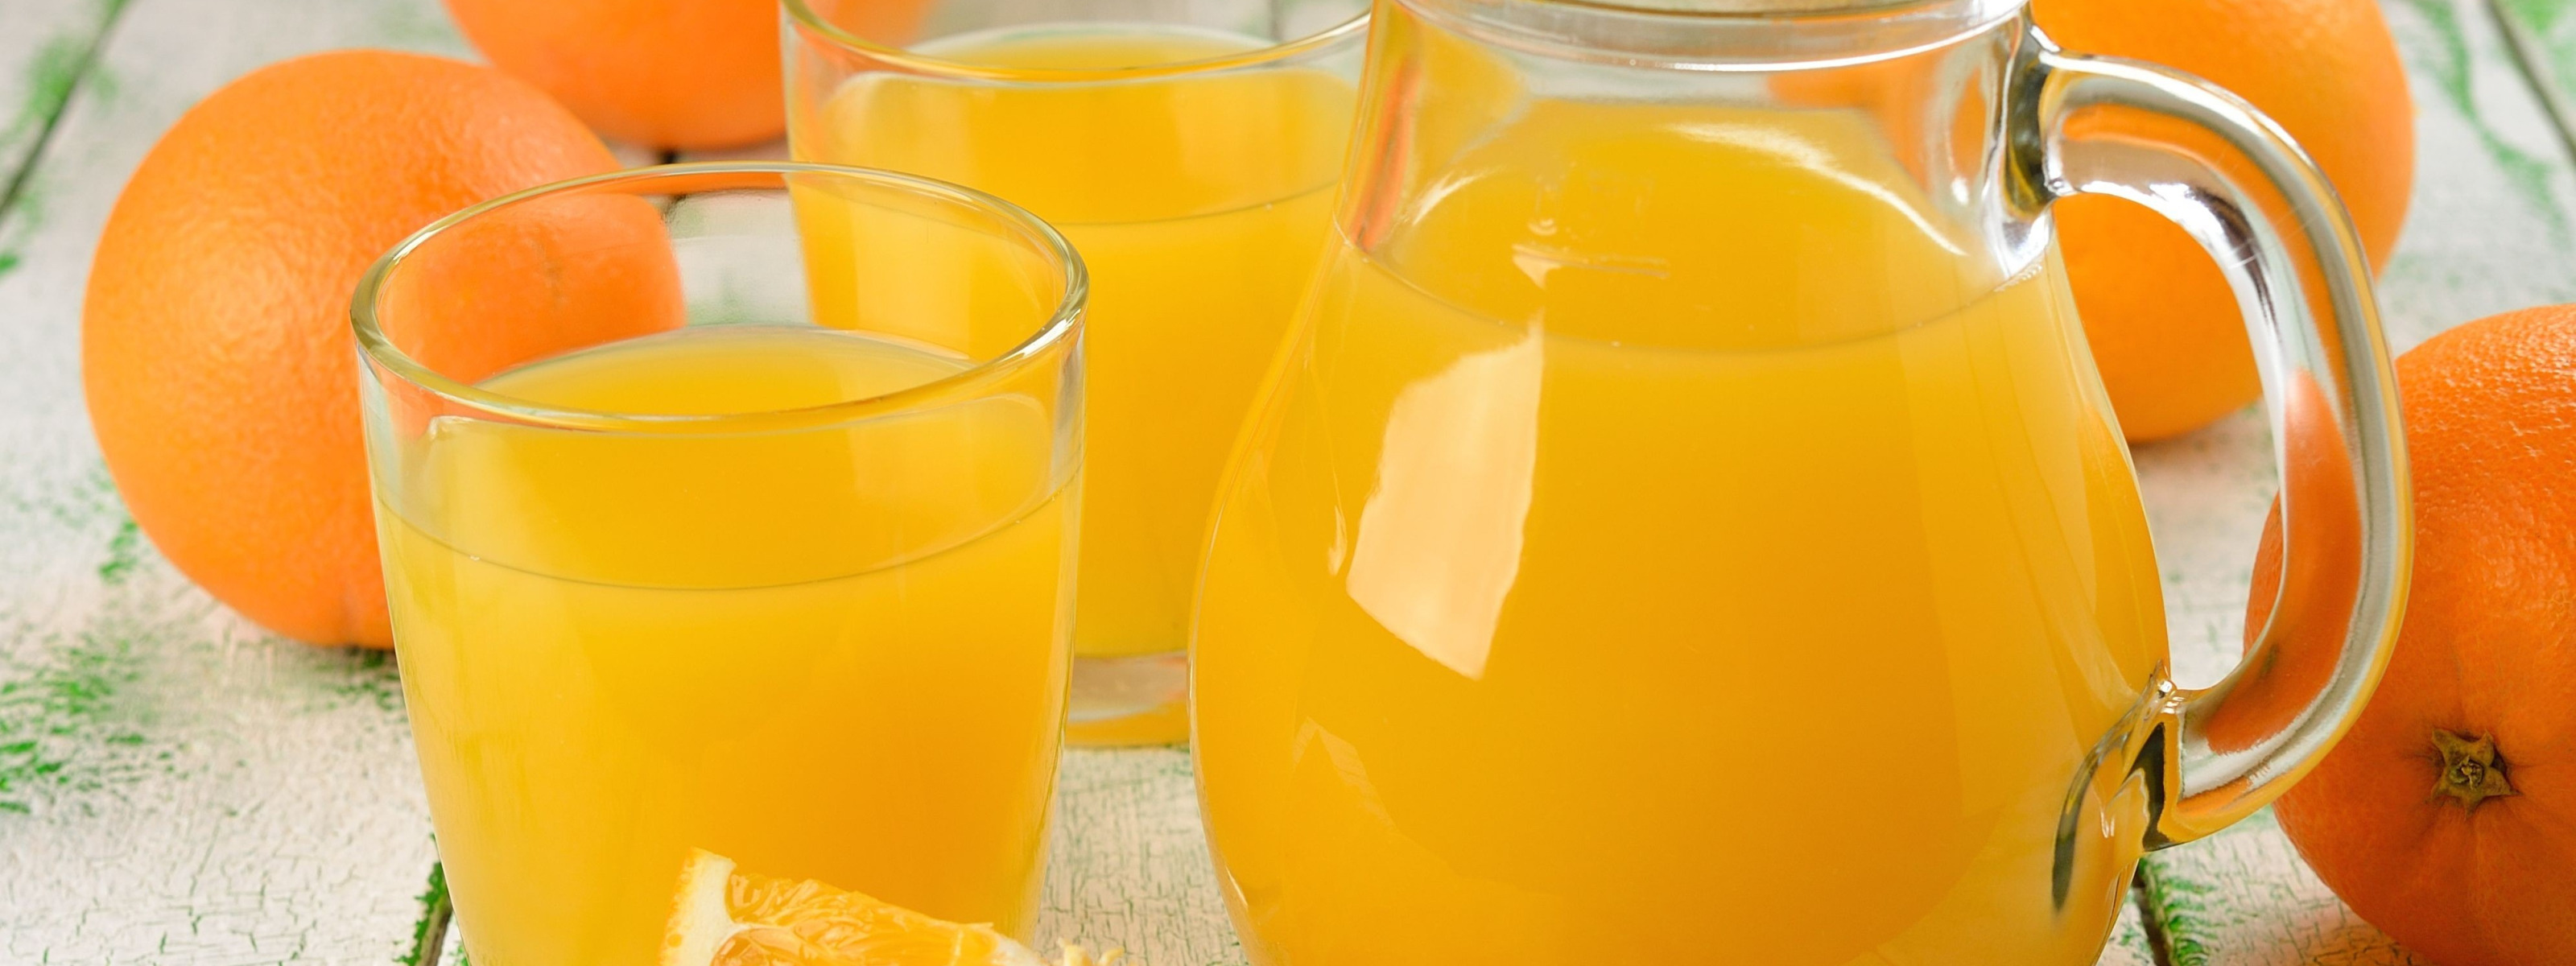 oranges, glasses, drink, pitcher, orange juice. 